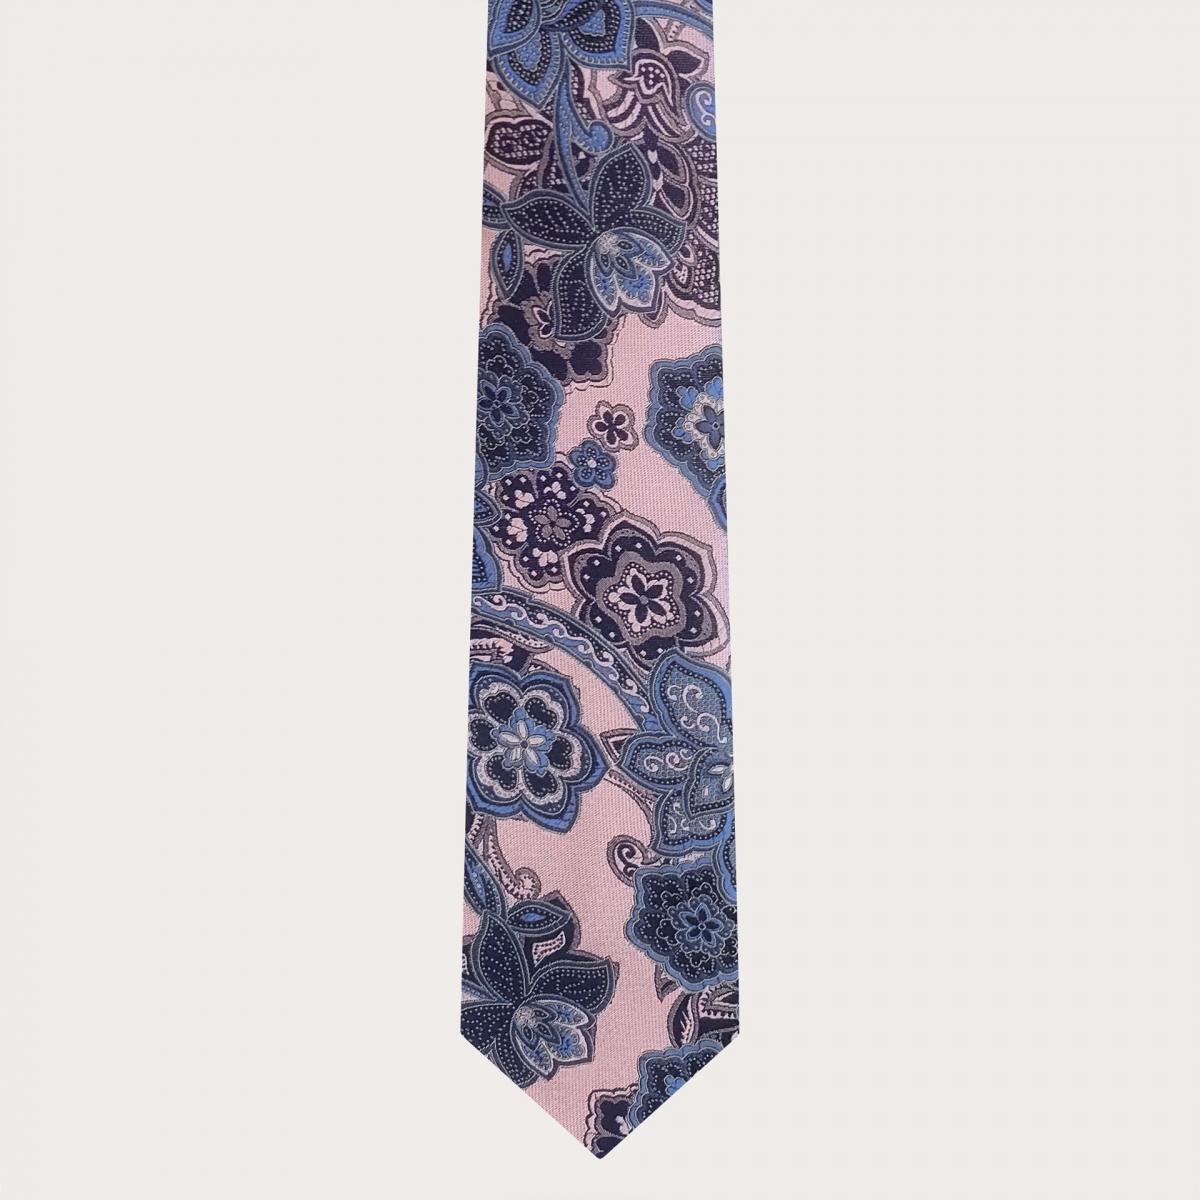 Brucle cravate rose cachemire en soie jacquard